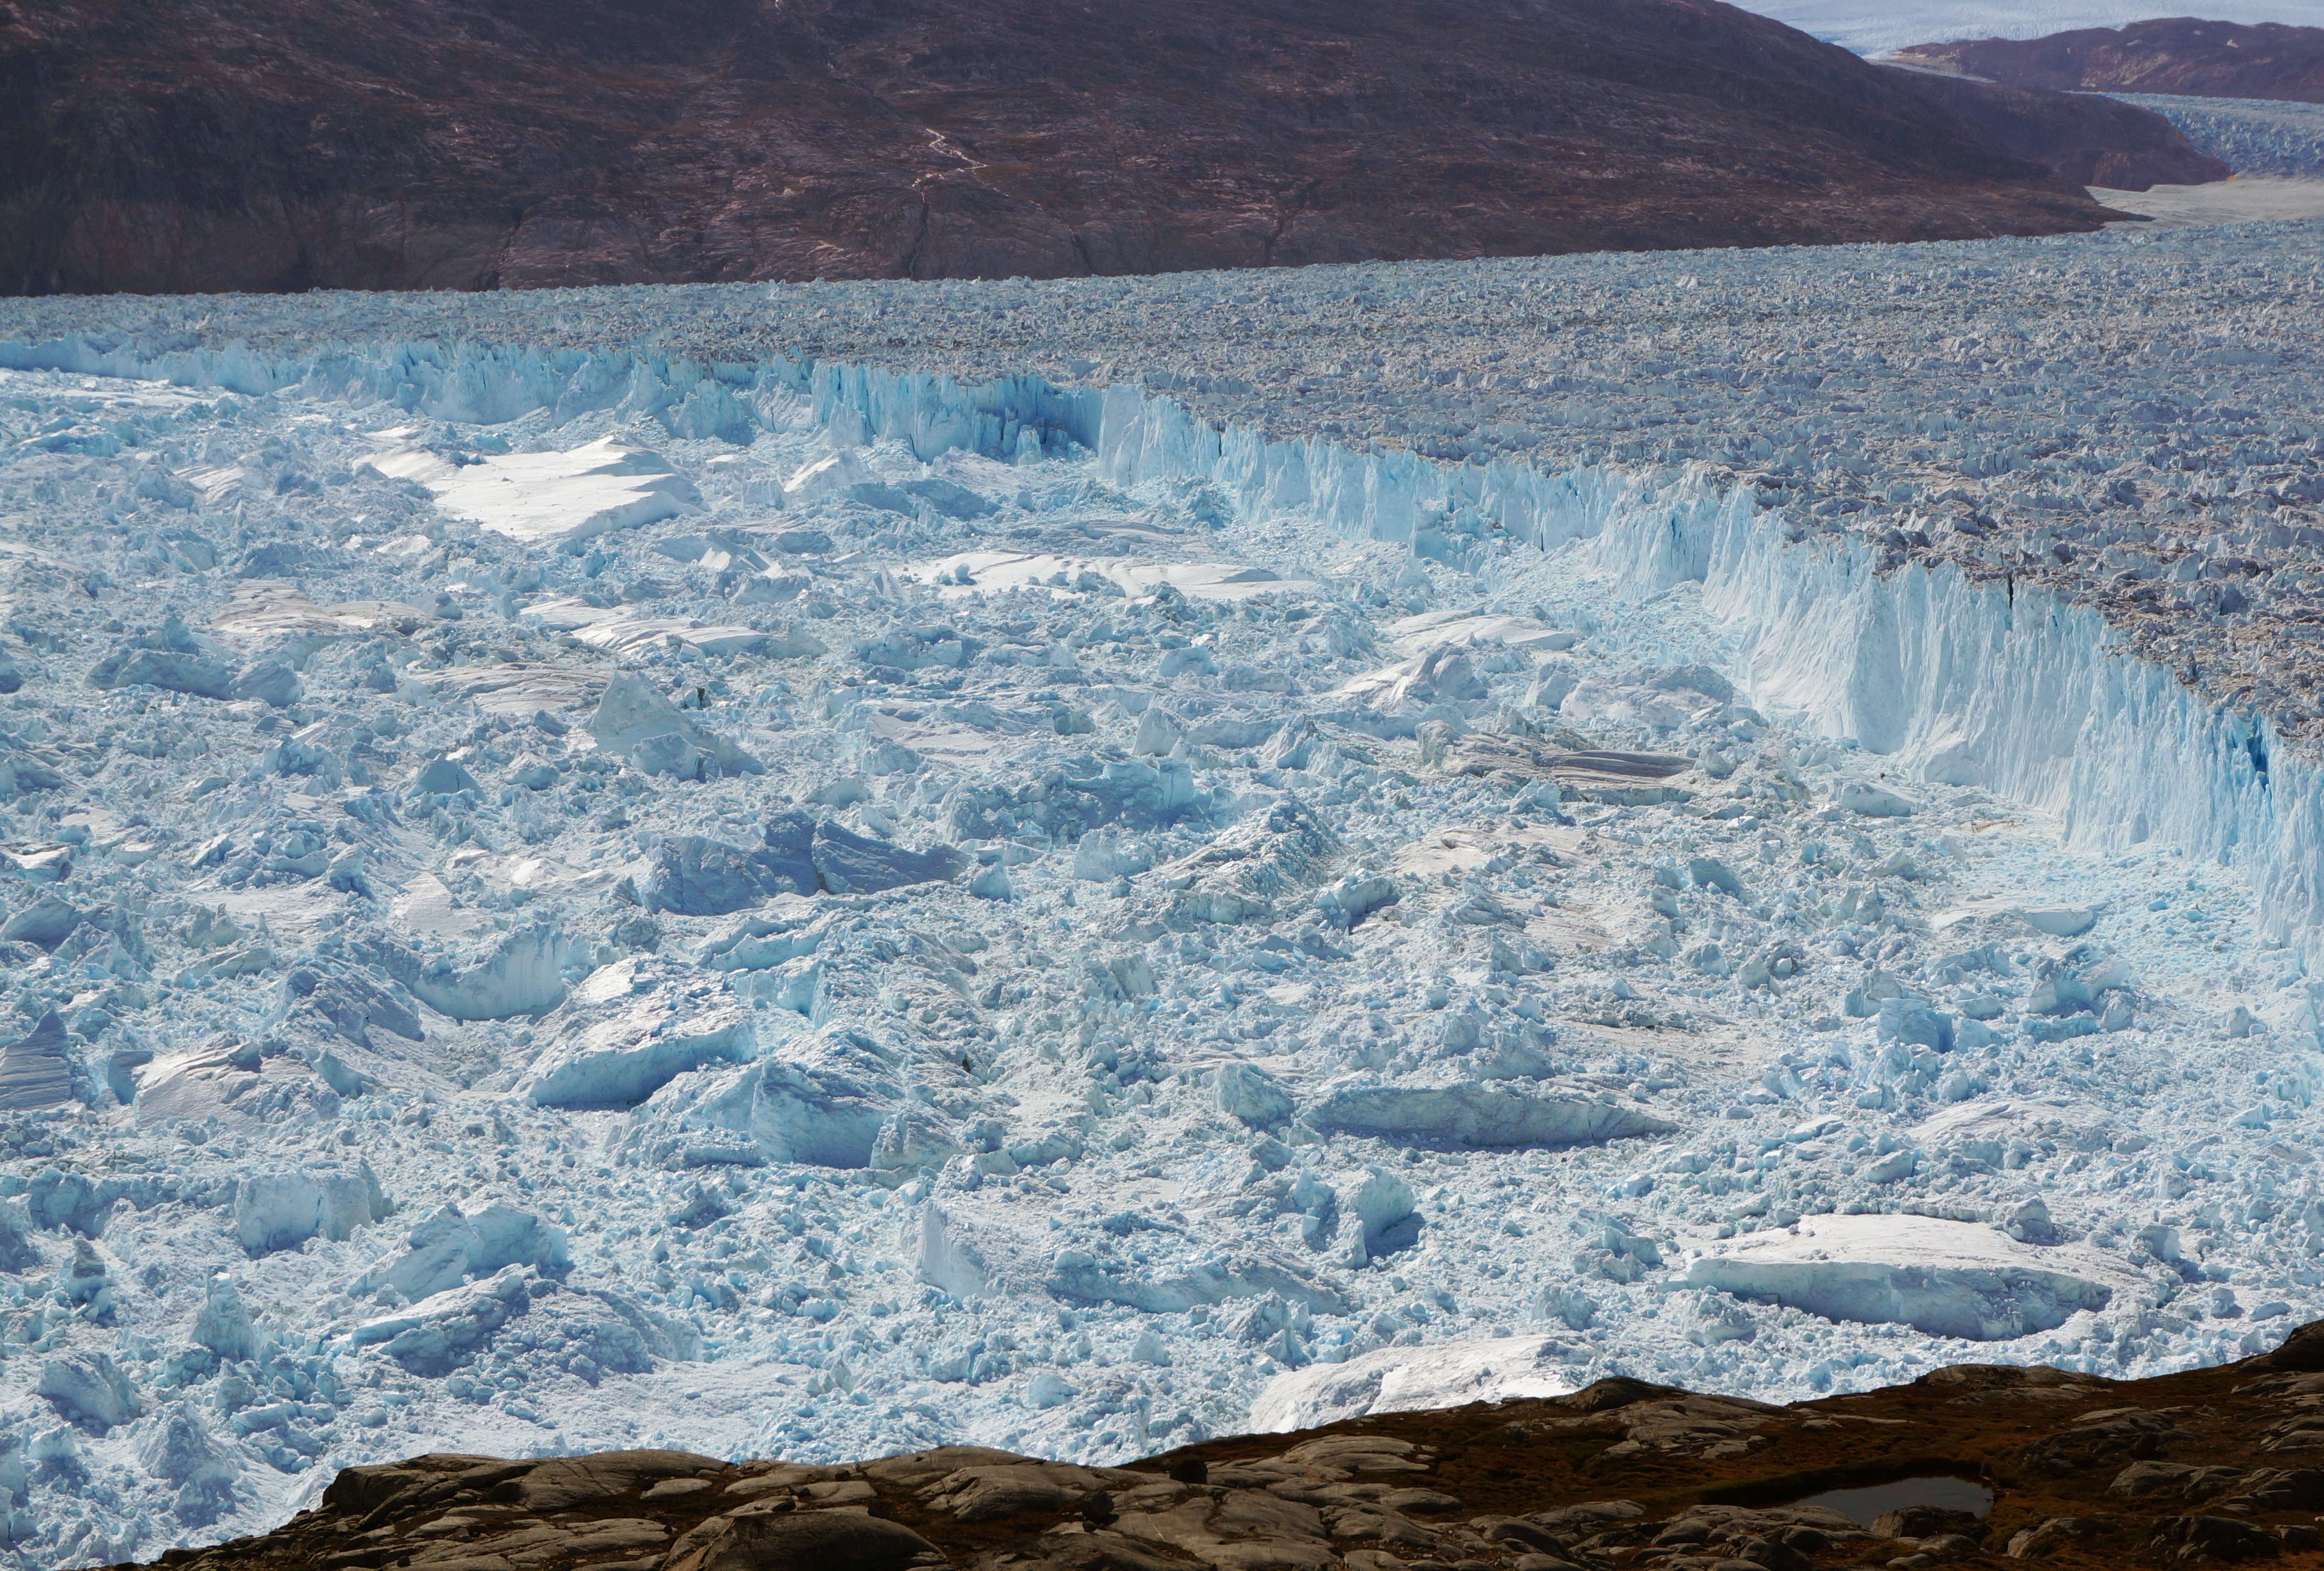 La tasa actual de retroceso de los glaciares puede no tener precedentes en los últimos 5.000 años (EFE/Knut Christianson/Foto cedida)
